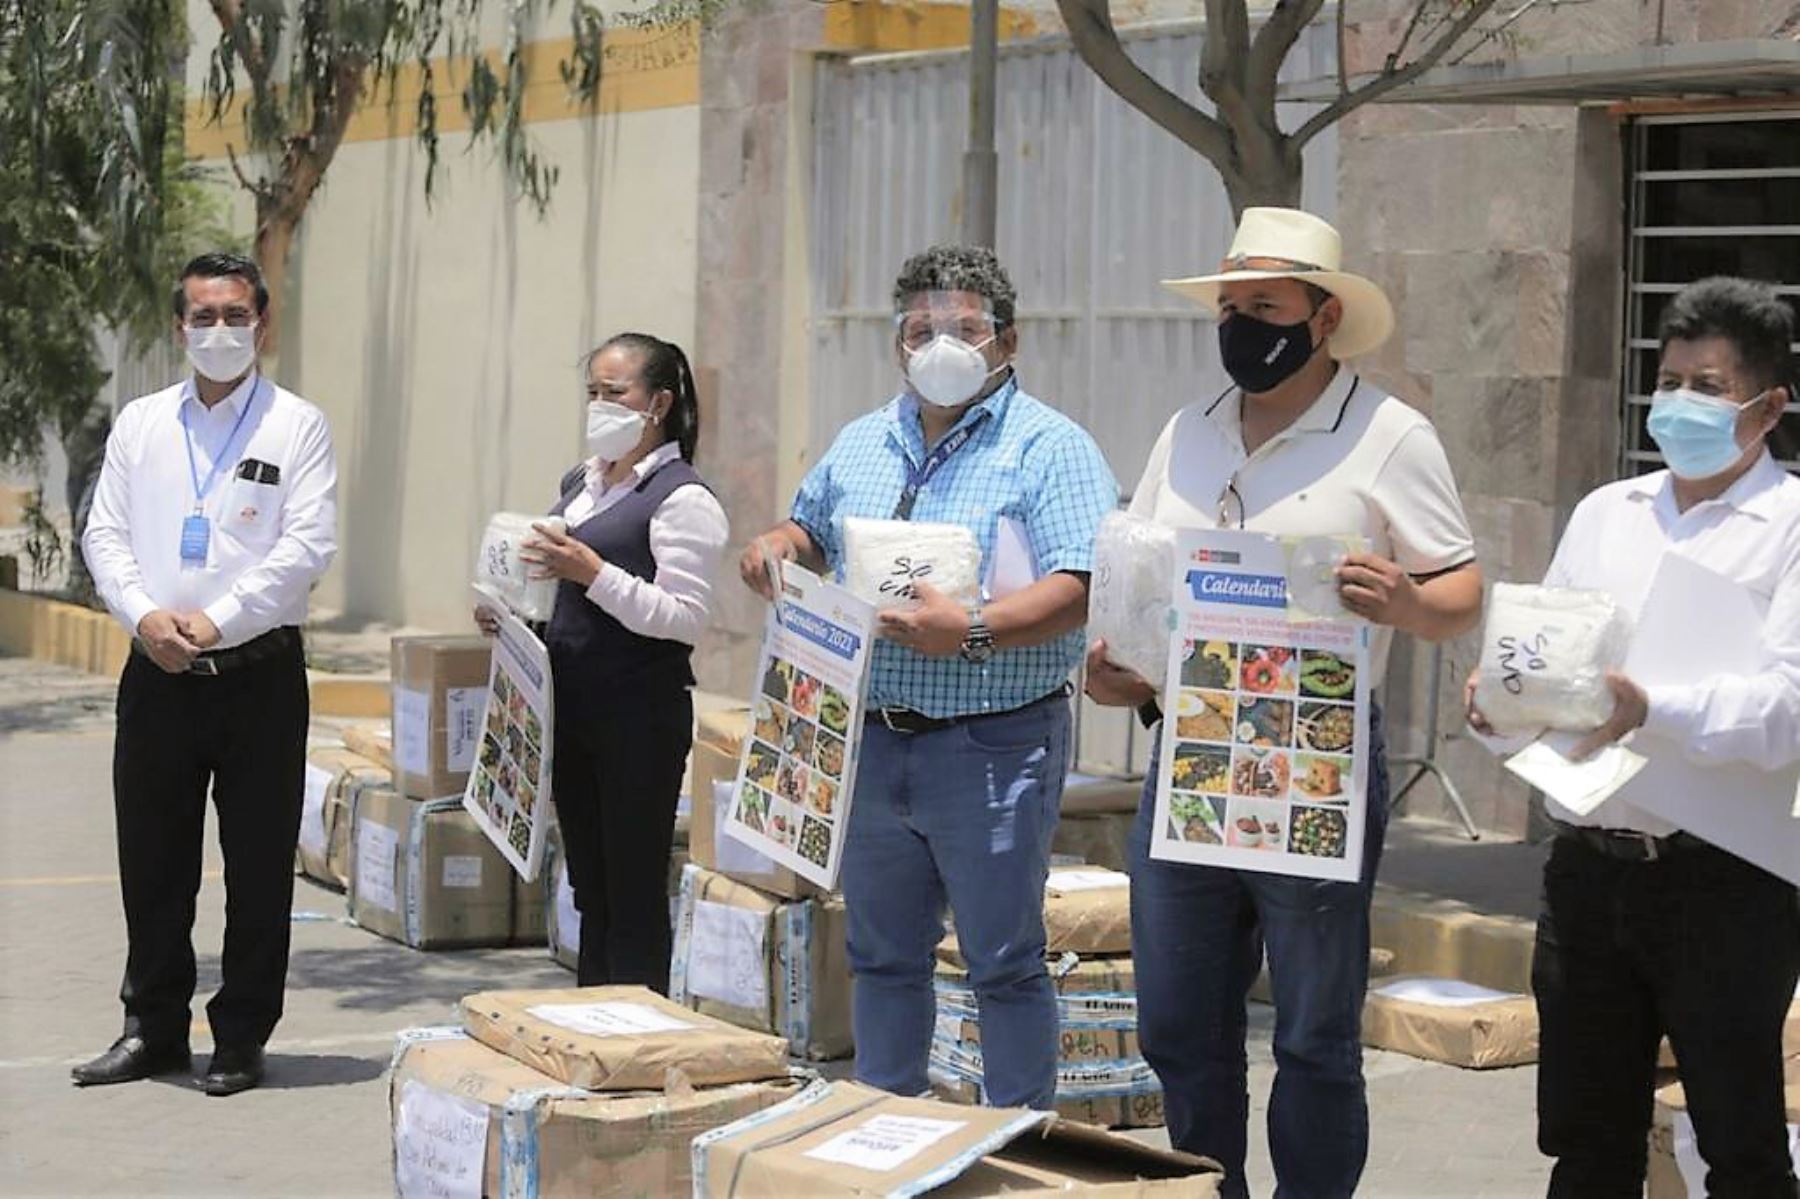 Equipos de protección personal para evitar contagios de covid-19 serán entregados a ciudadanos de zonas rurales de Arequipa.